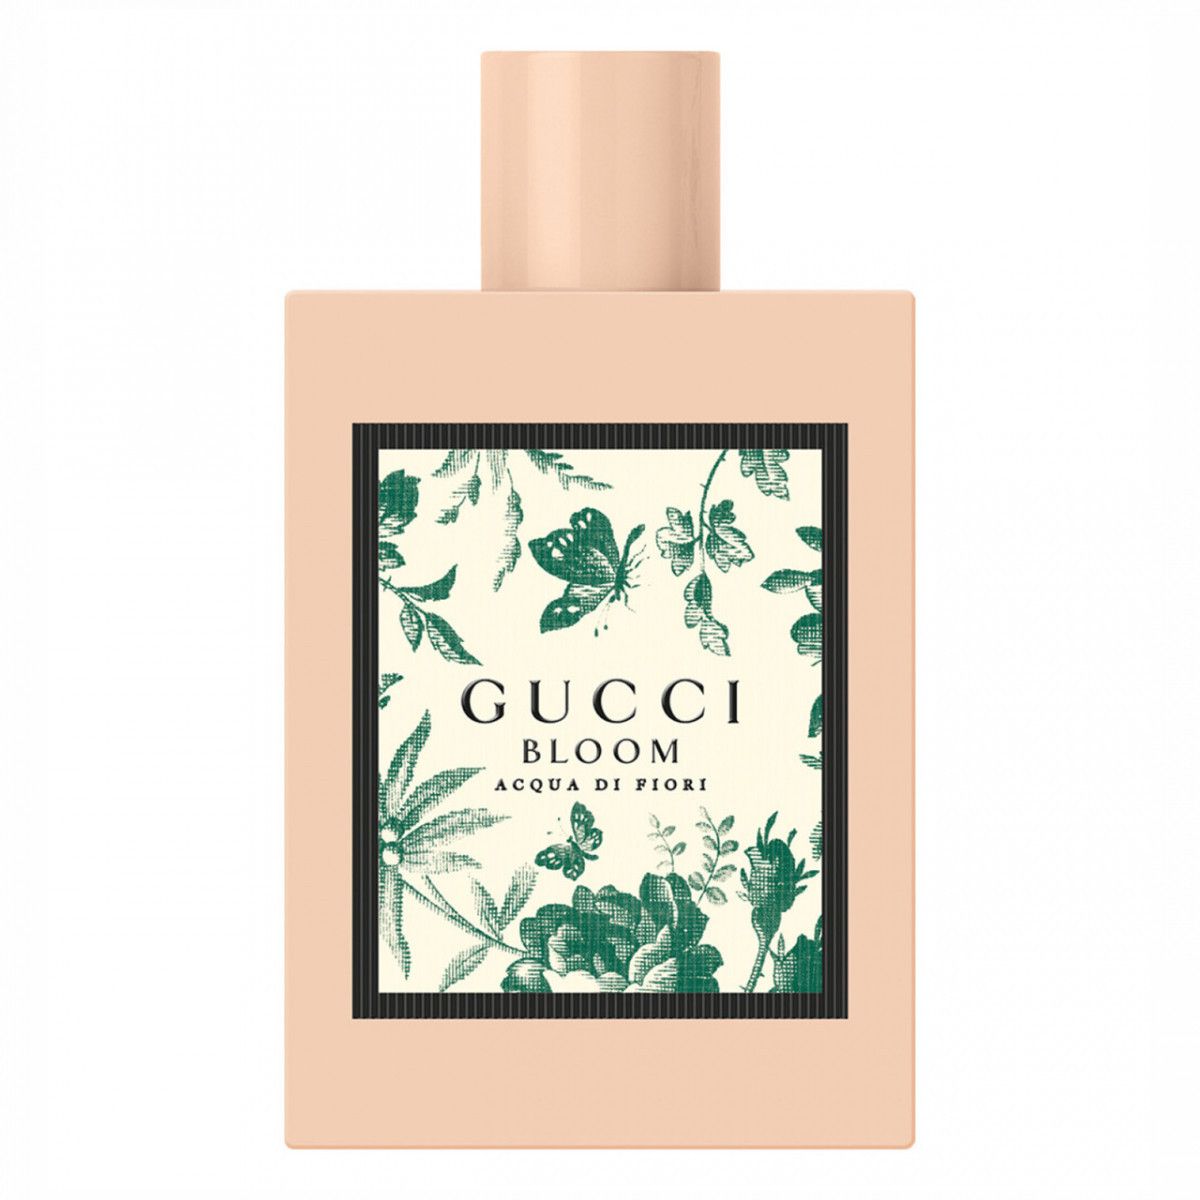 Bloom Acqua Di Fiori Gucci - Perfume Feminino Eau de Toilette 100ml